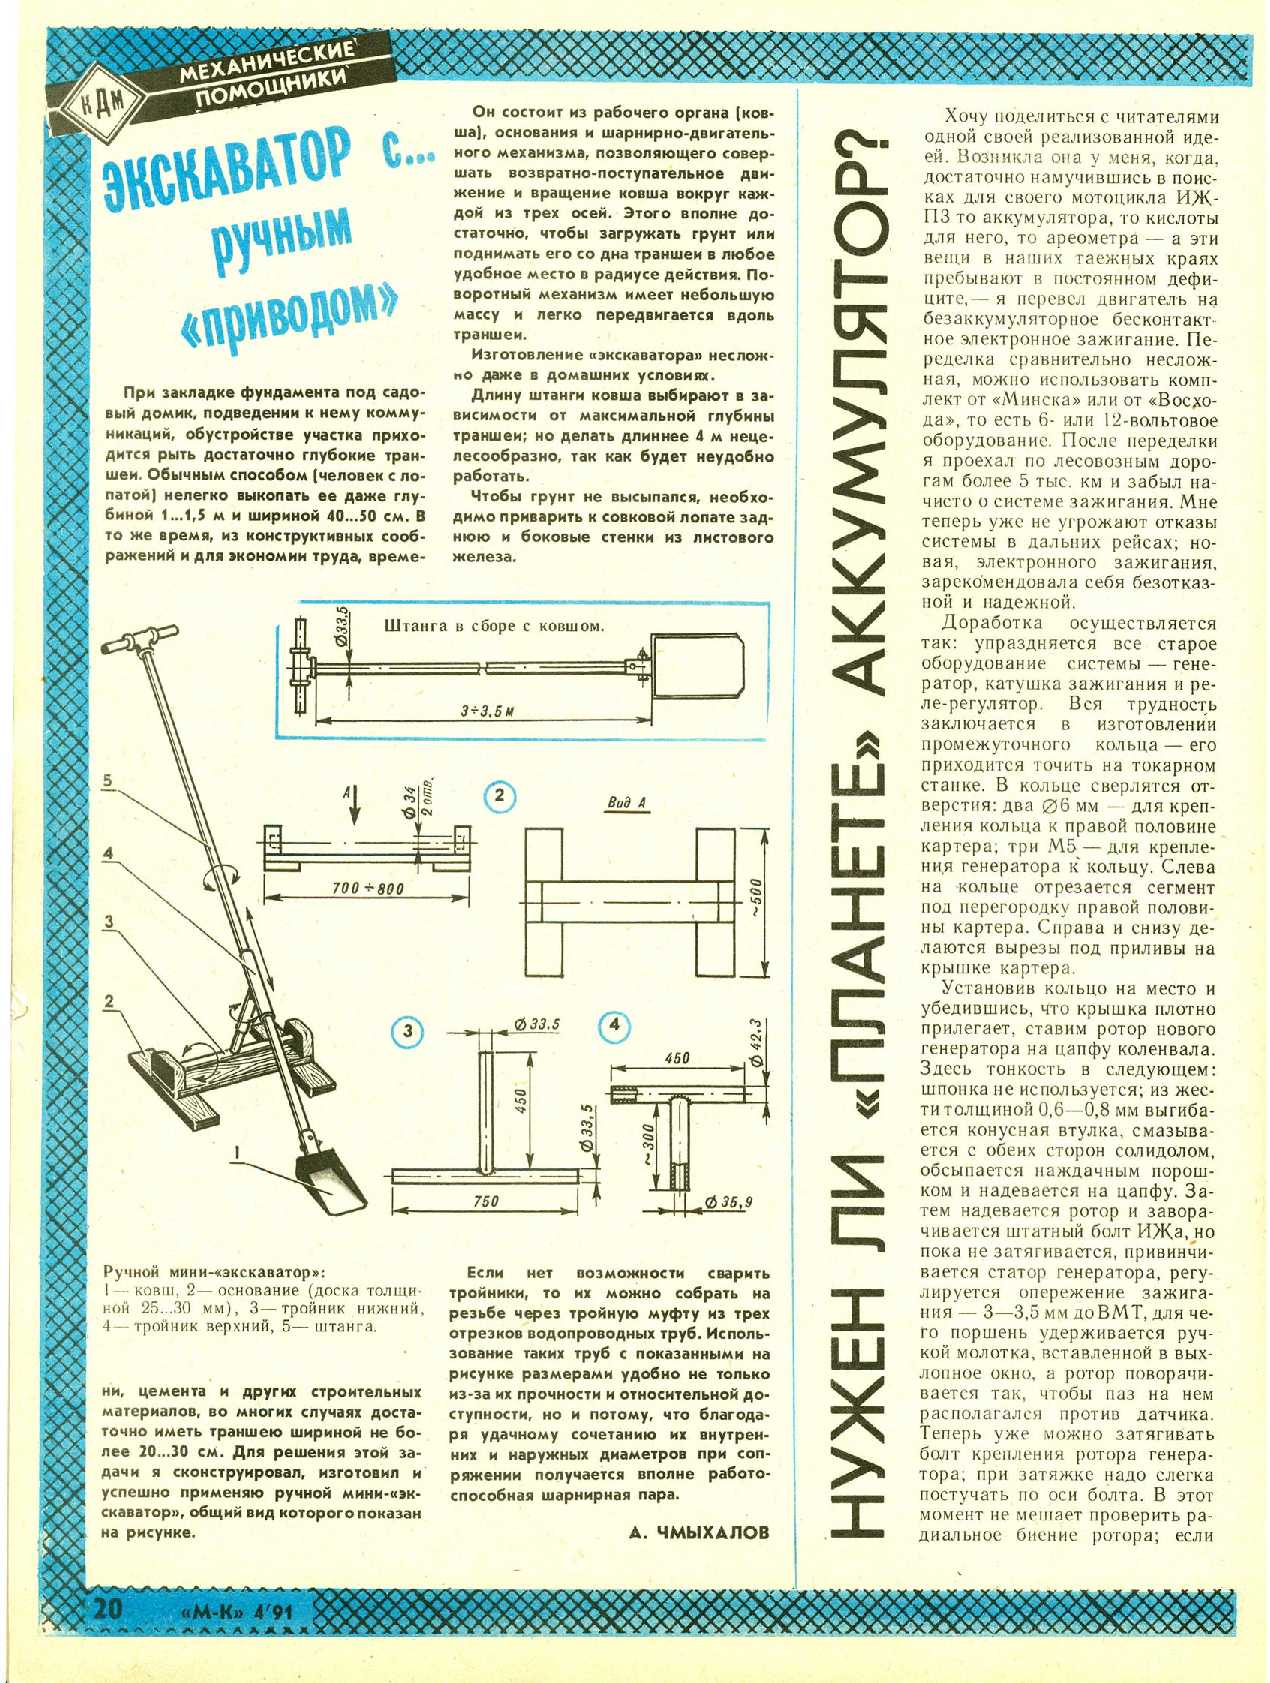 МК 4, 1991, 20 c.